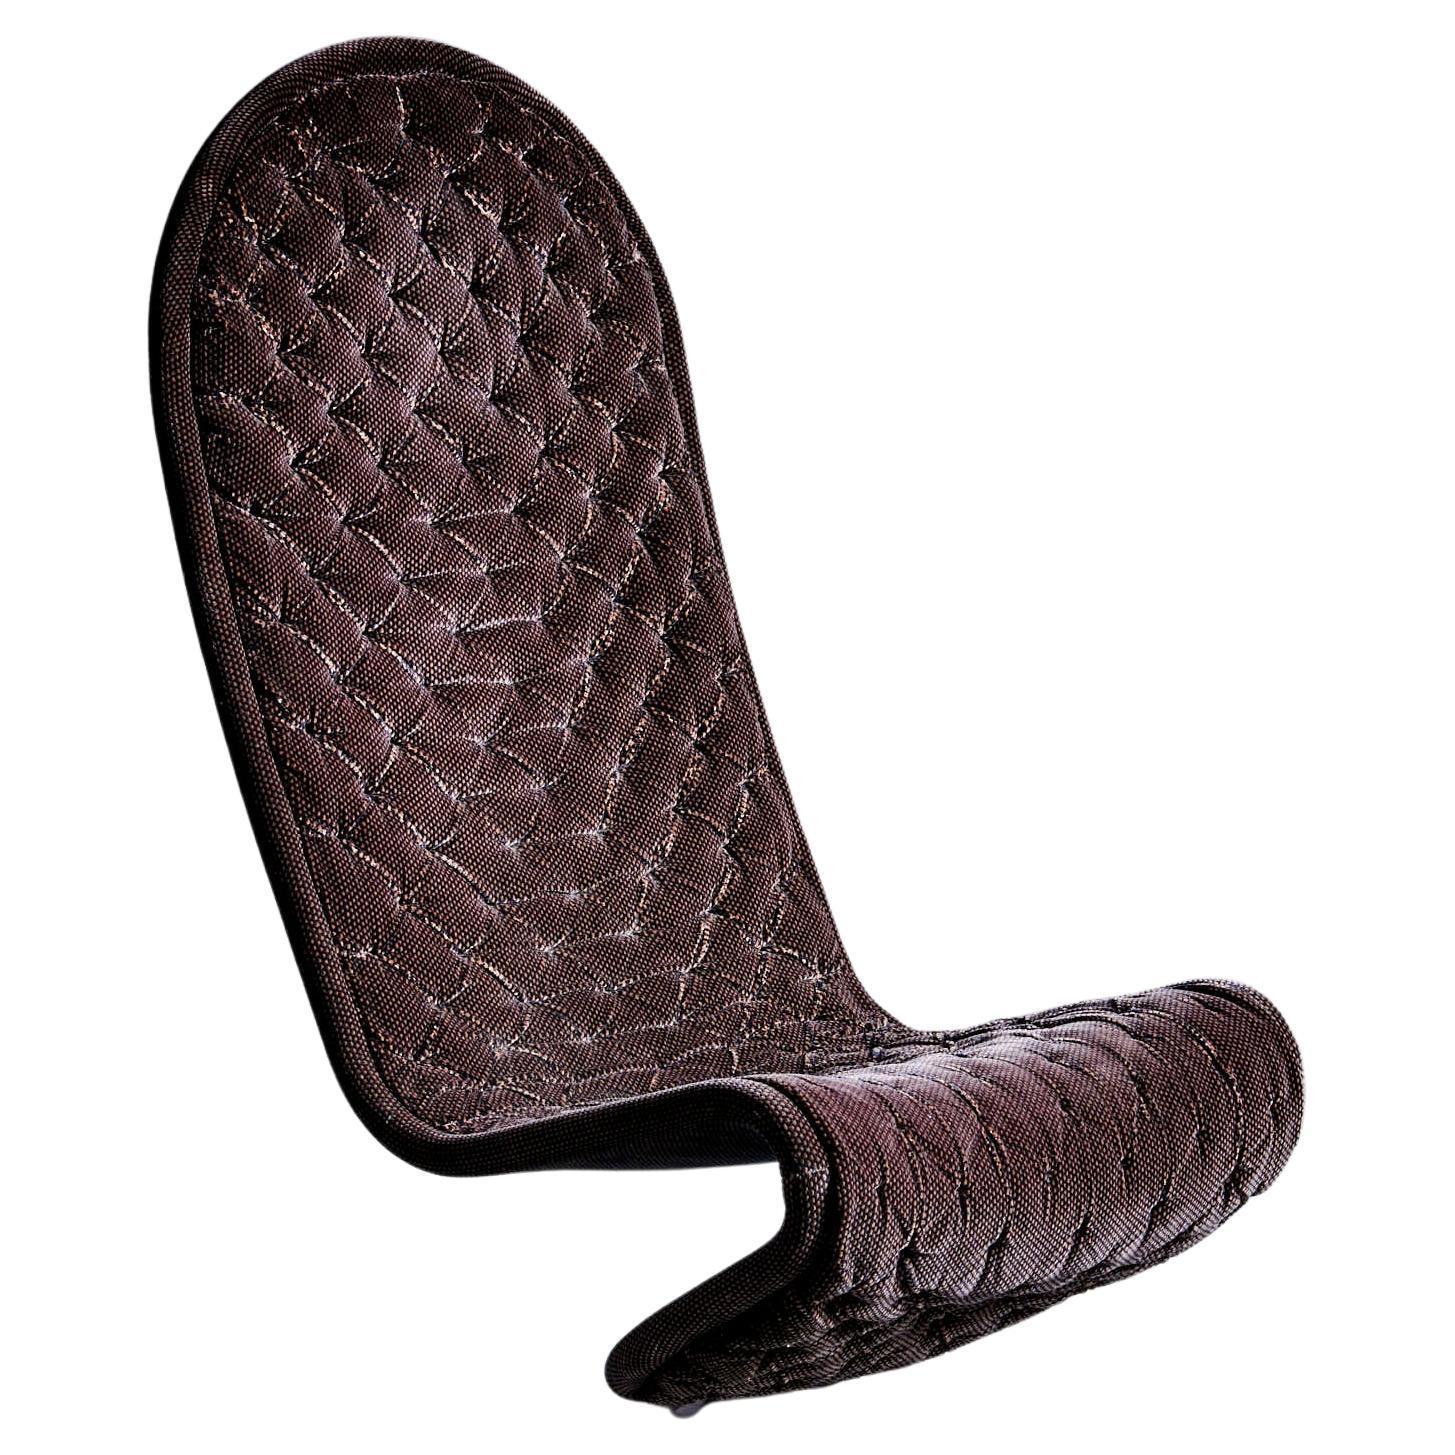 System 1-2-3 Lounge Chair Deluxe Highback,, Runder Sockel mit vollständig gepolstertem Sesselsitz. 